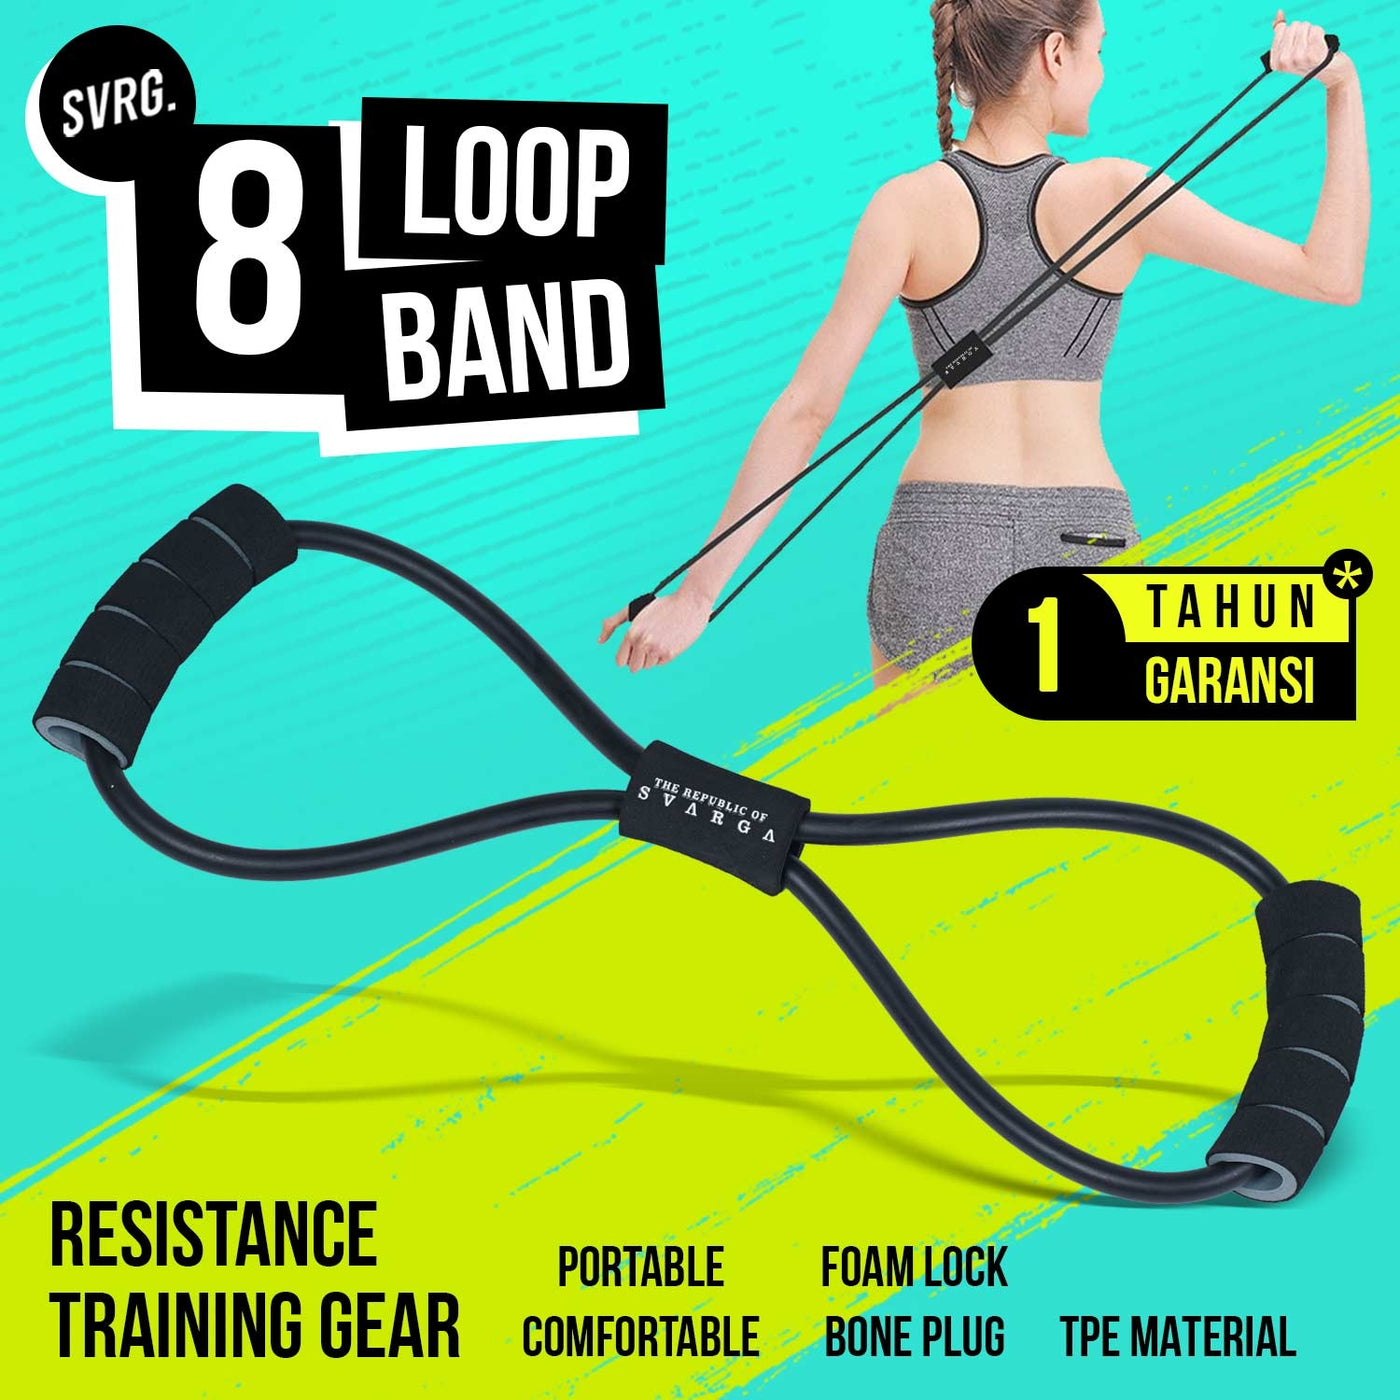 8 Loop Band